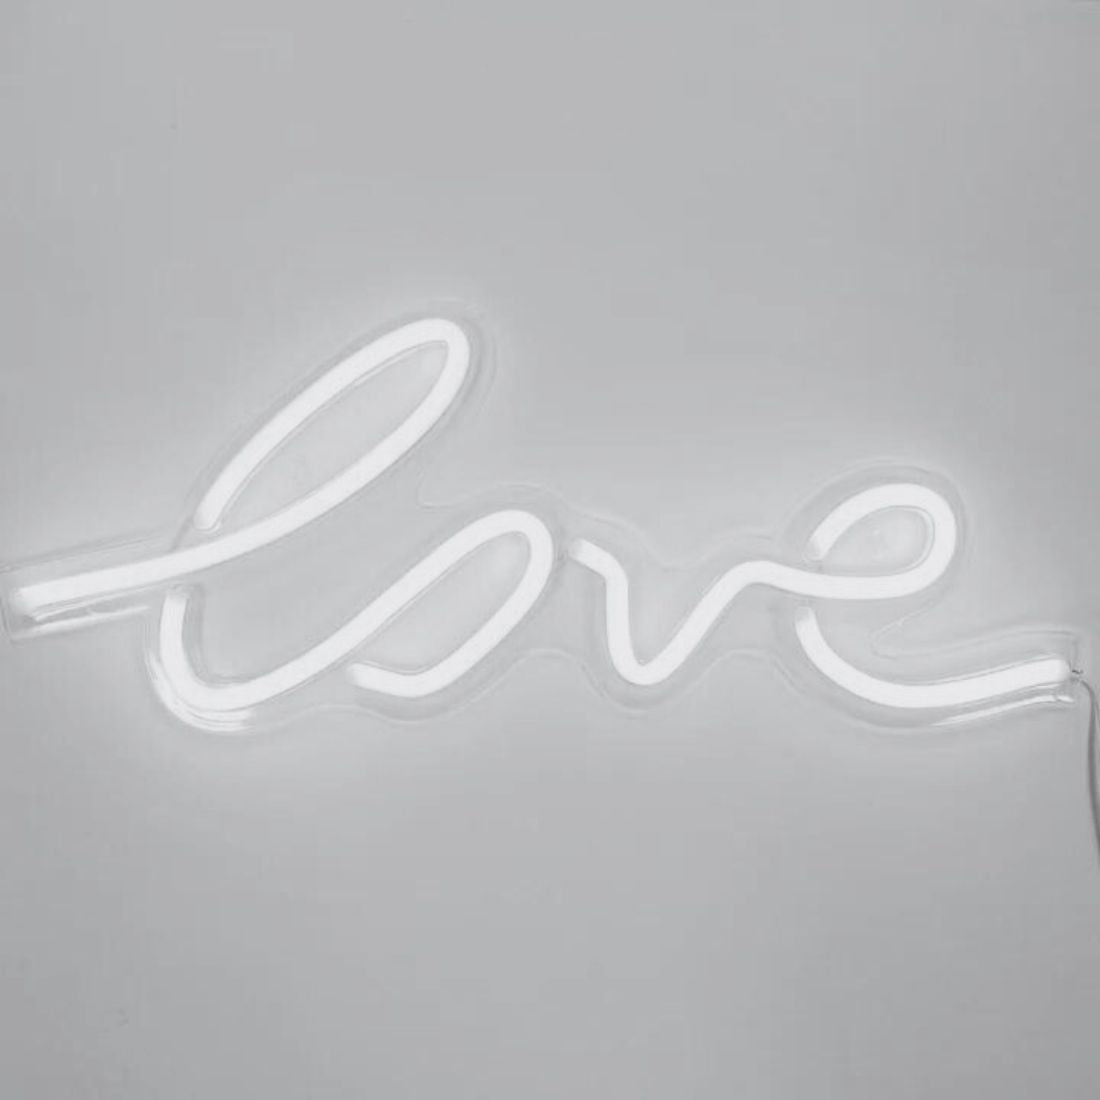 White "Love" Neon Light